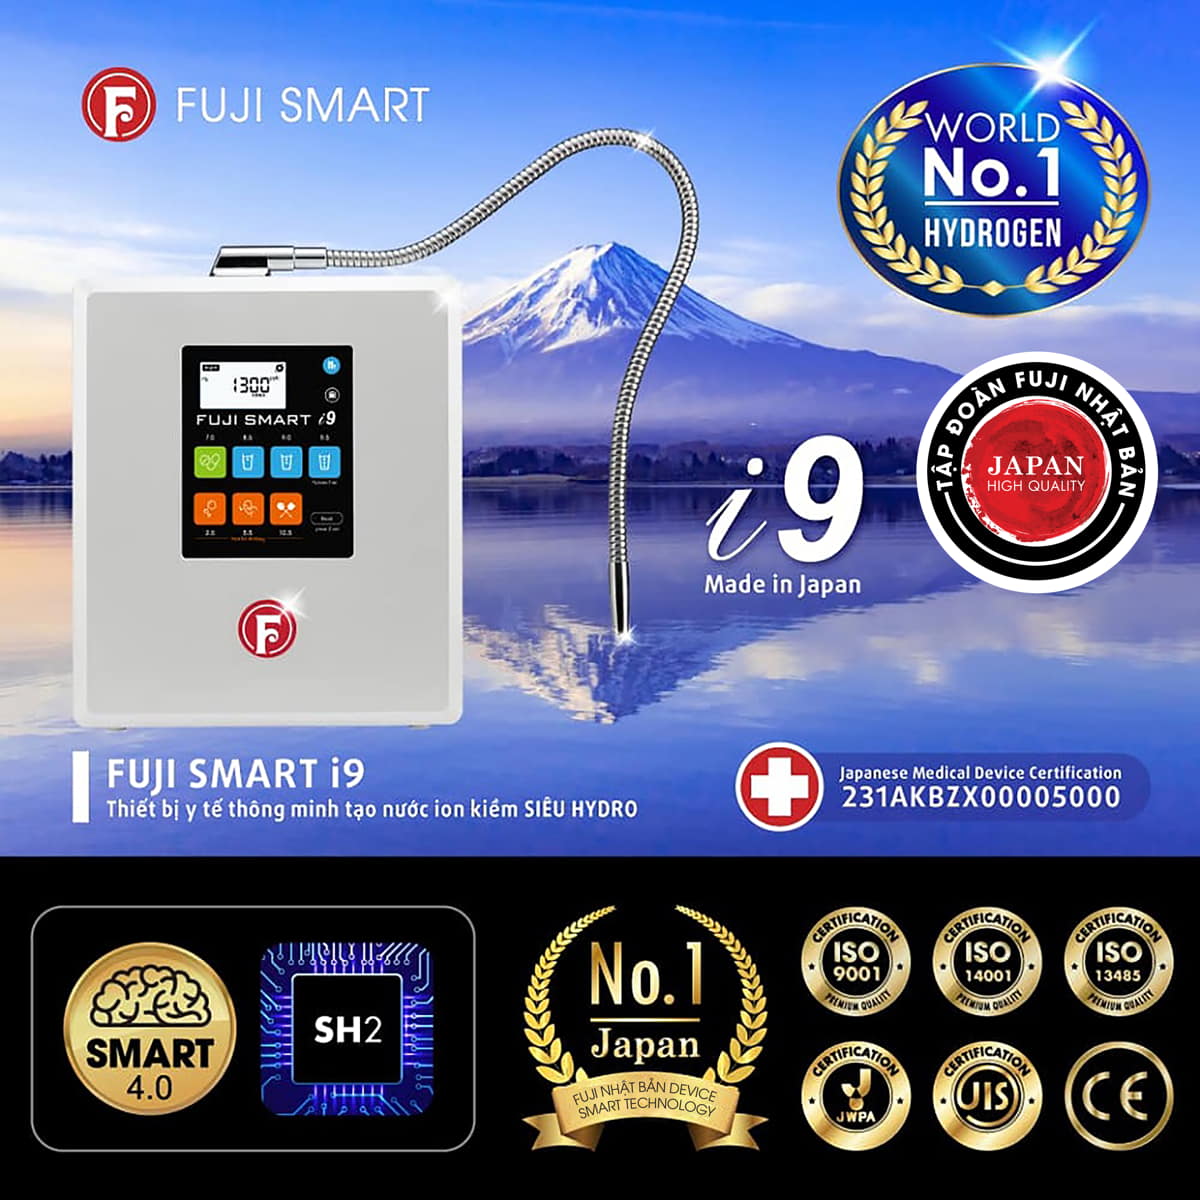 mua máy fuji smart i9 giá rẻ chính hãng ở đâu